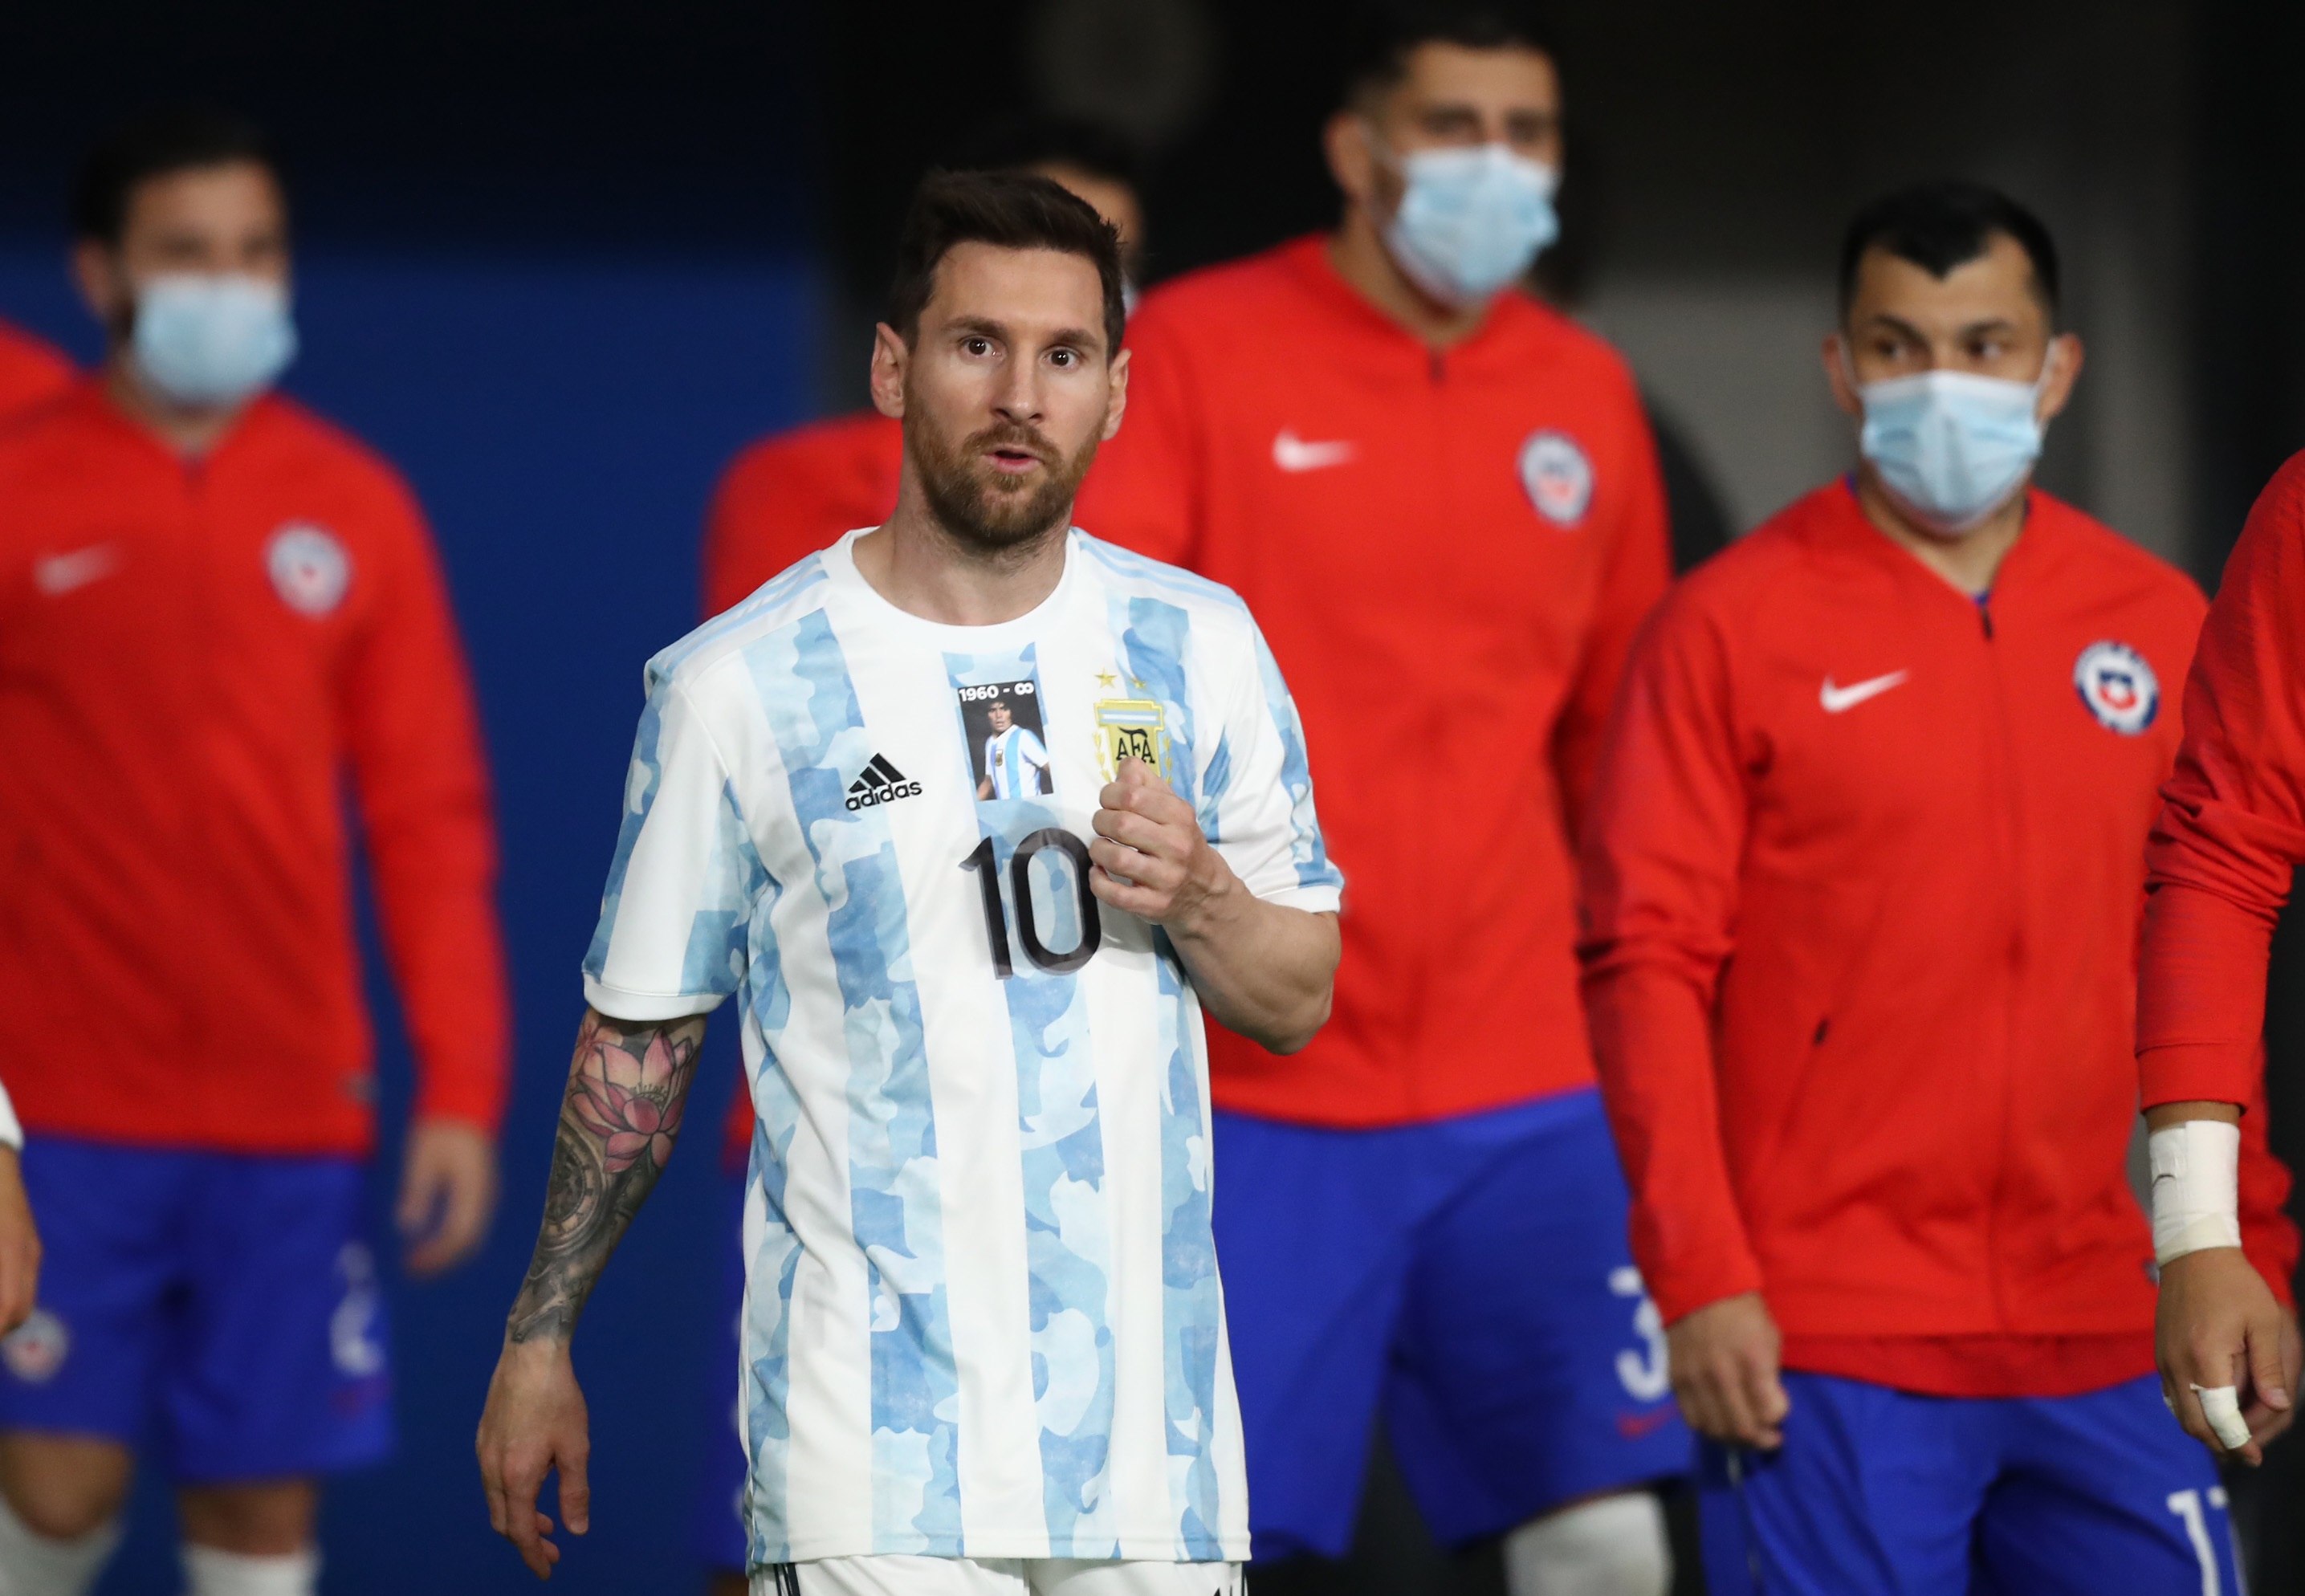 La super exclusiva remera que usó Messi en su llegada a la